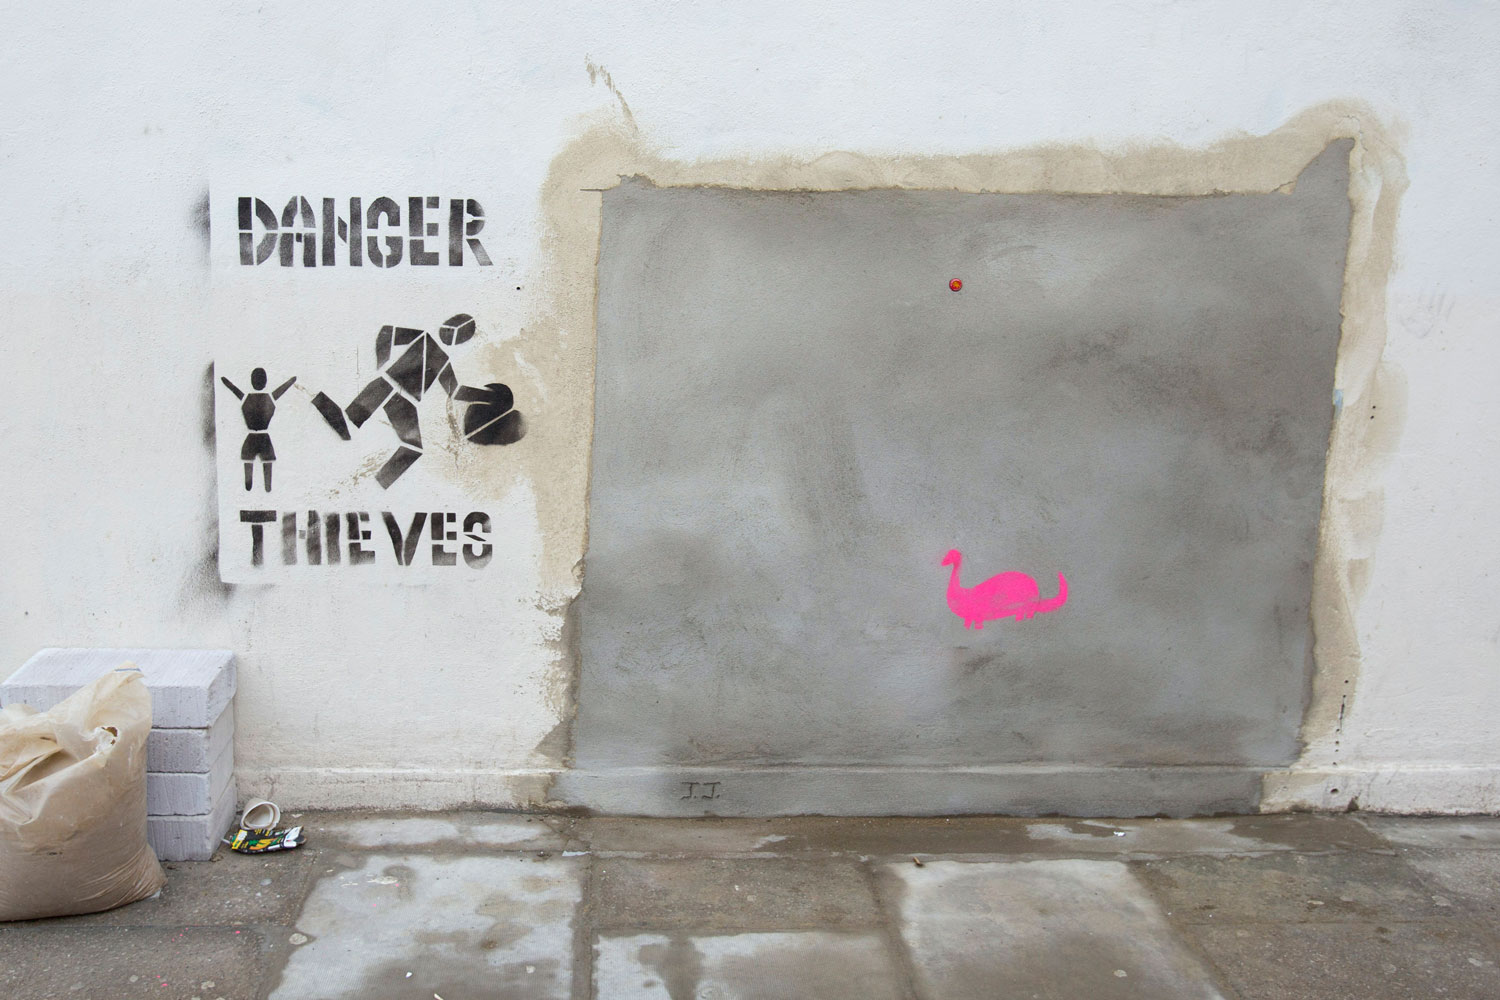 Subastas millonarias de la obra de Banksy entre sus admiradores